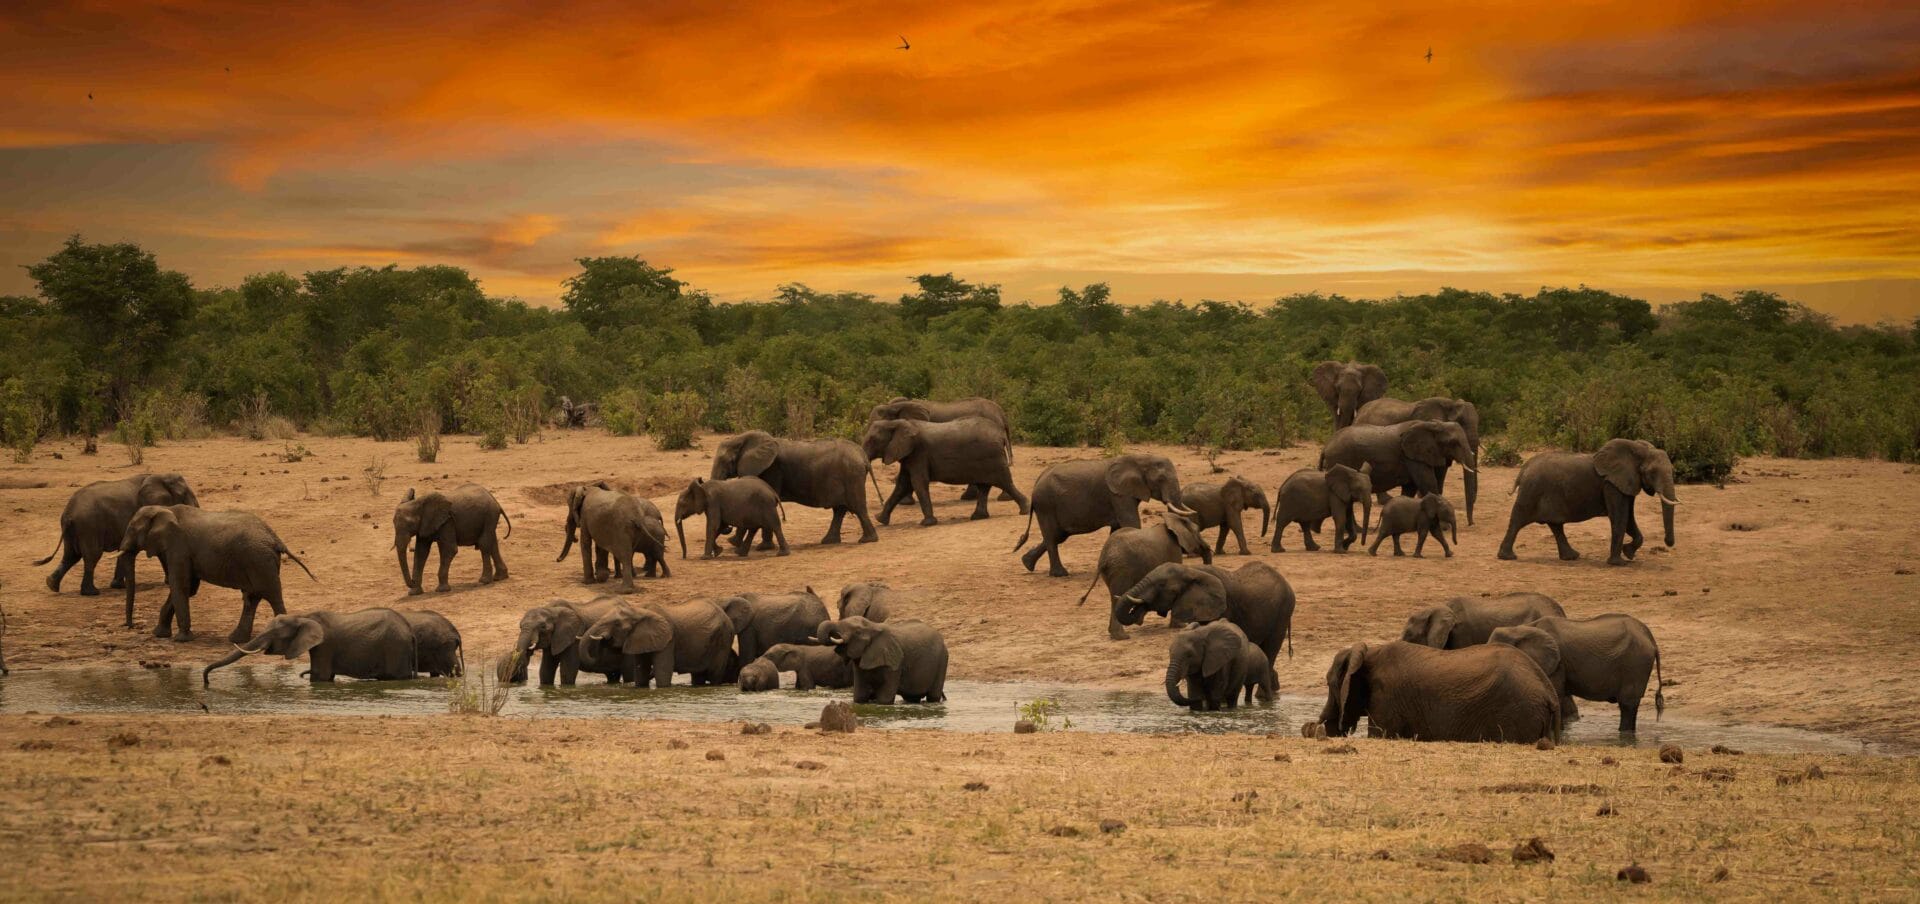 45b. Imvelo Safari Lodges Elephant parade Credit Dennus Baum1